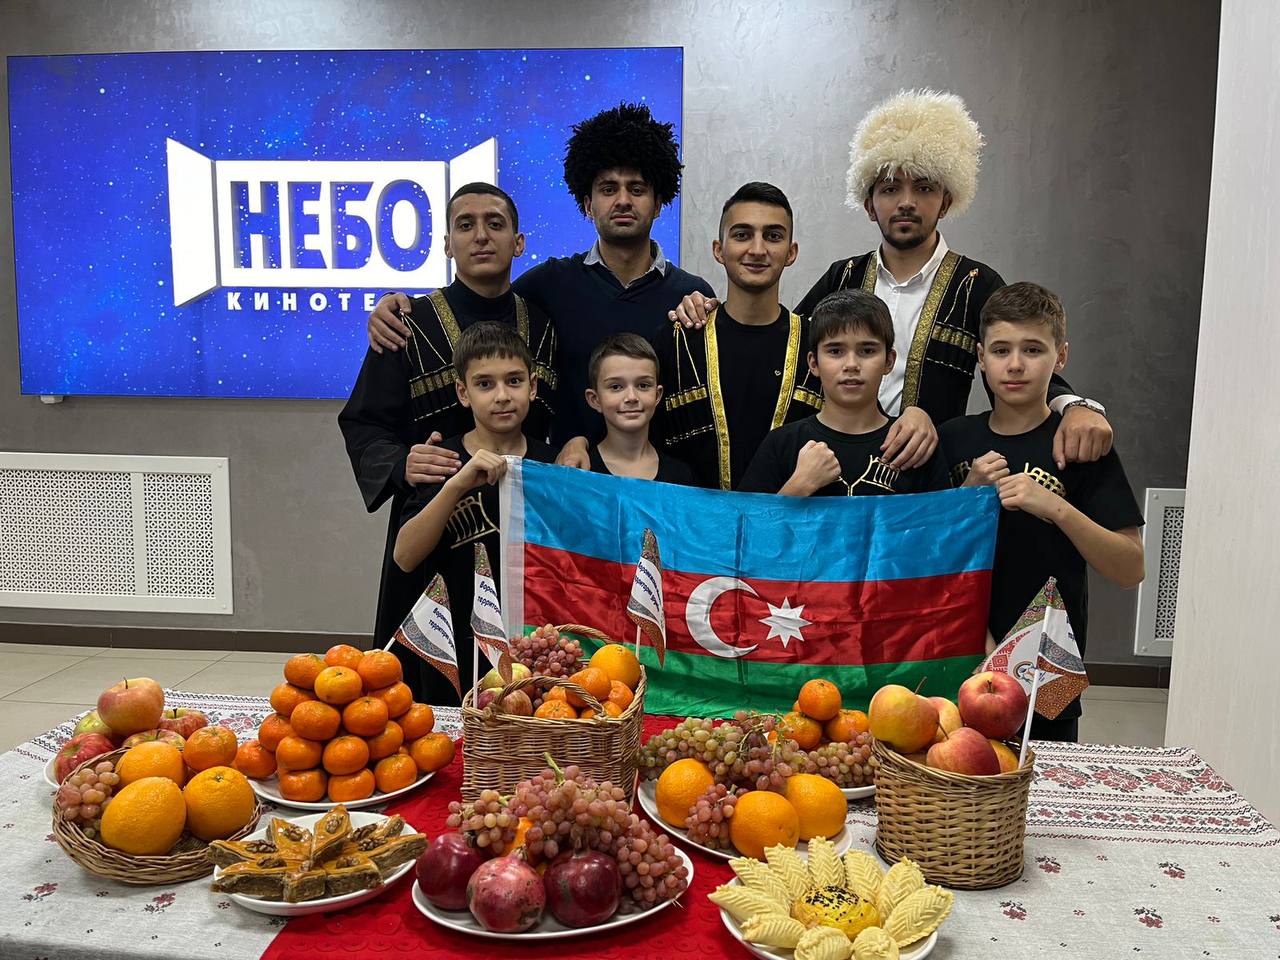 Азербайджанскую культуру представили на фестивале «Воронеж многонациональный»